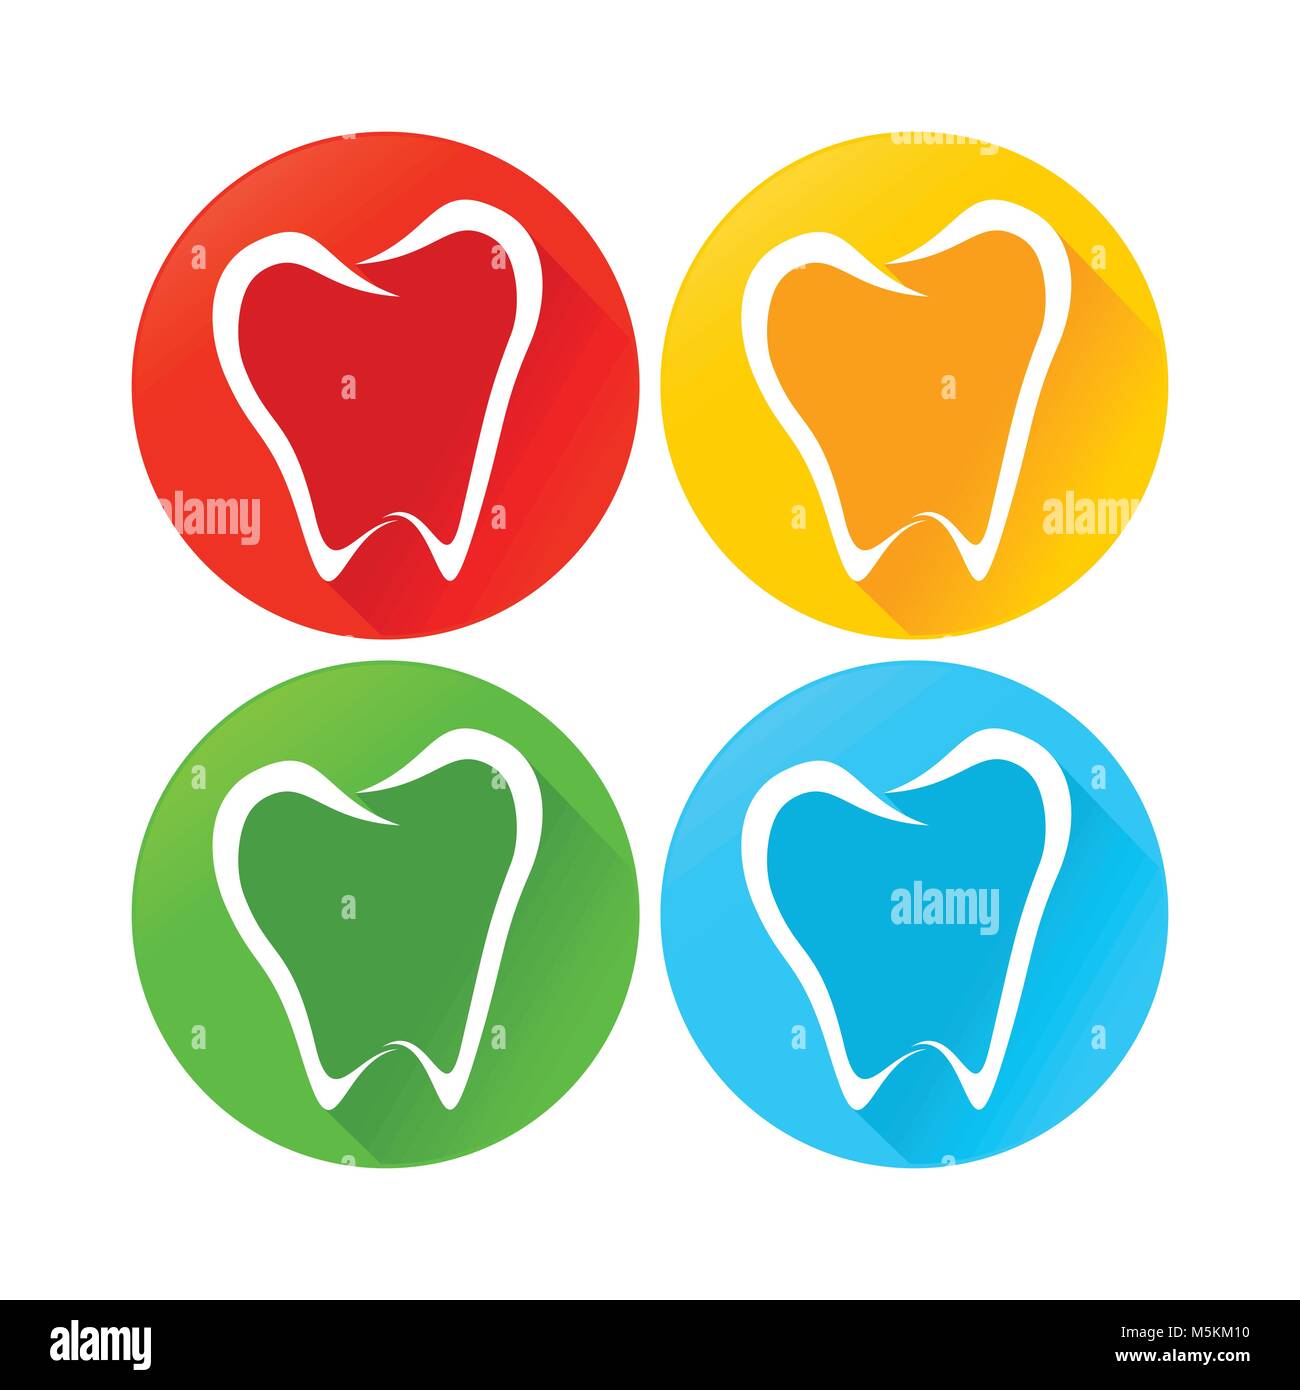 Abstract dente dentale linea cerchio di Arte Moderna icone rotonde Vector Graphic Design Illustrazione Vettoriale